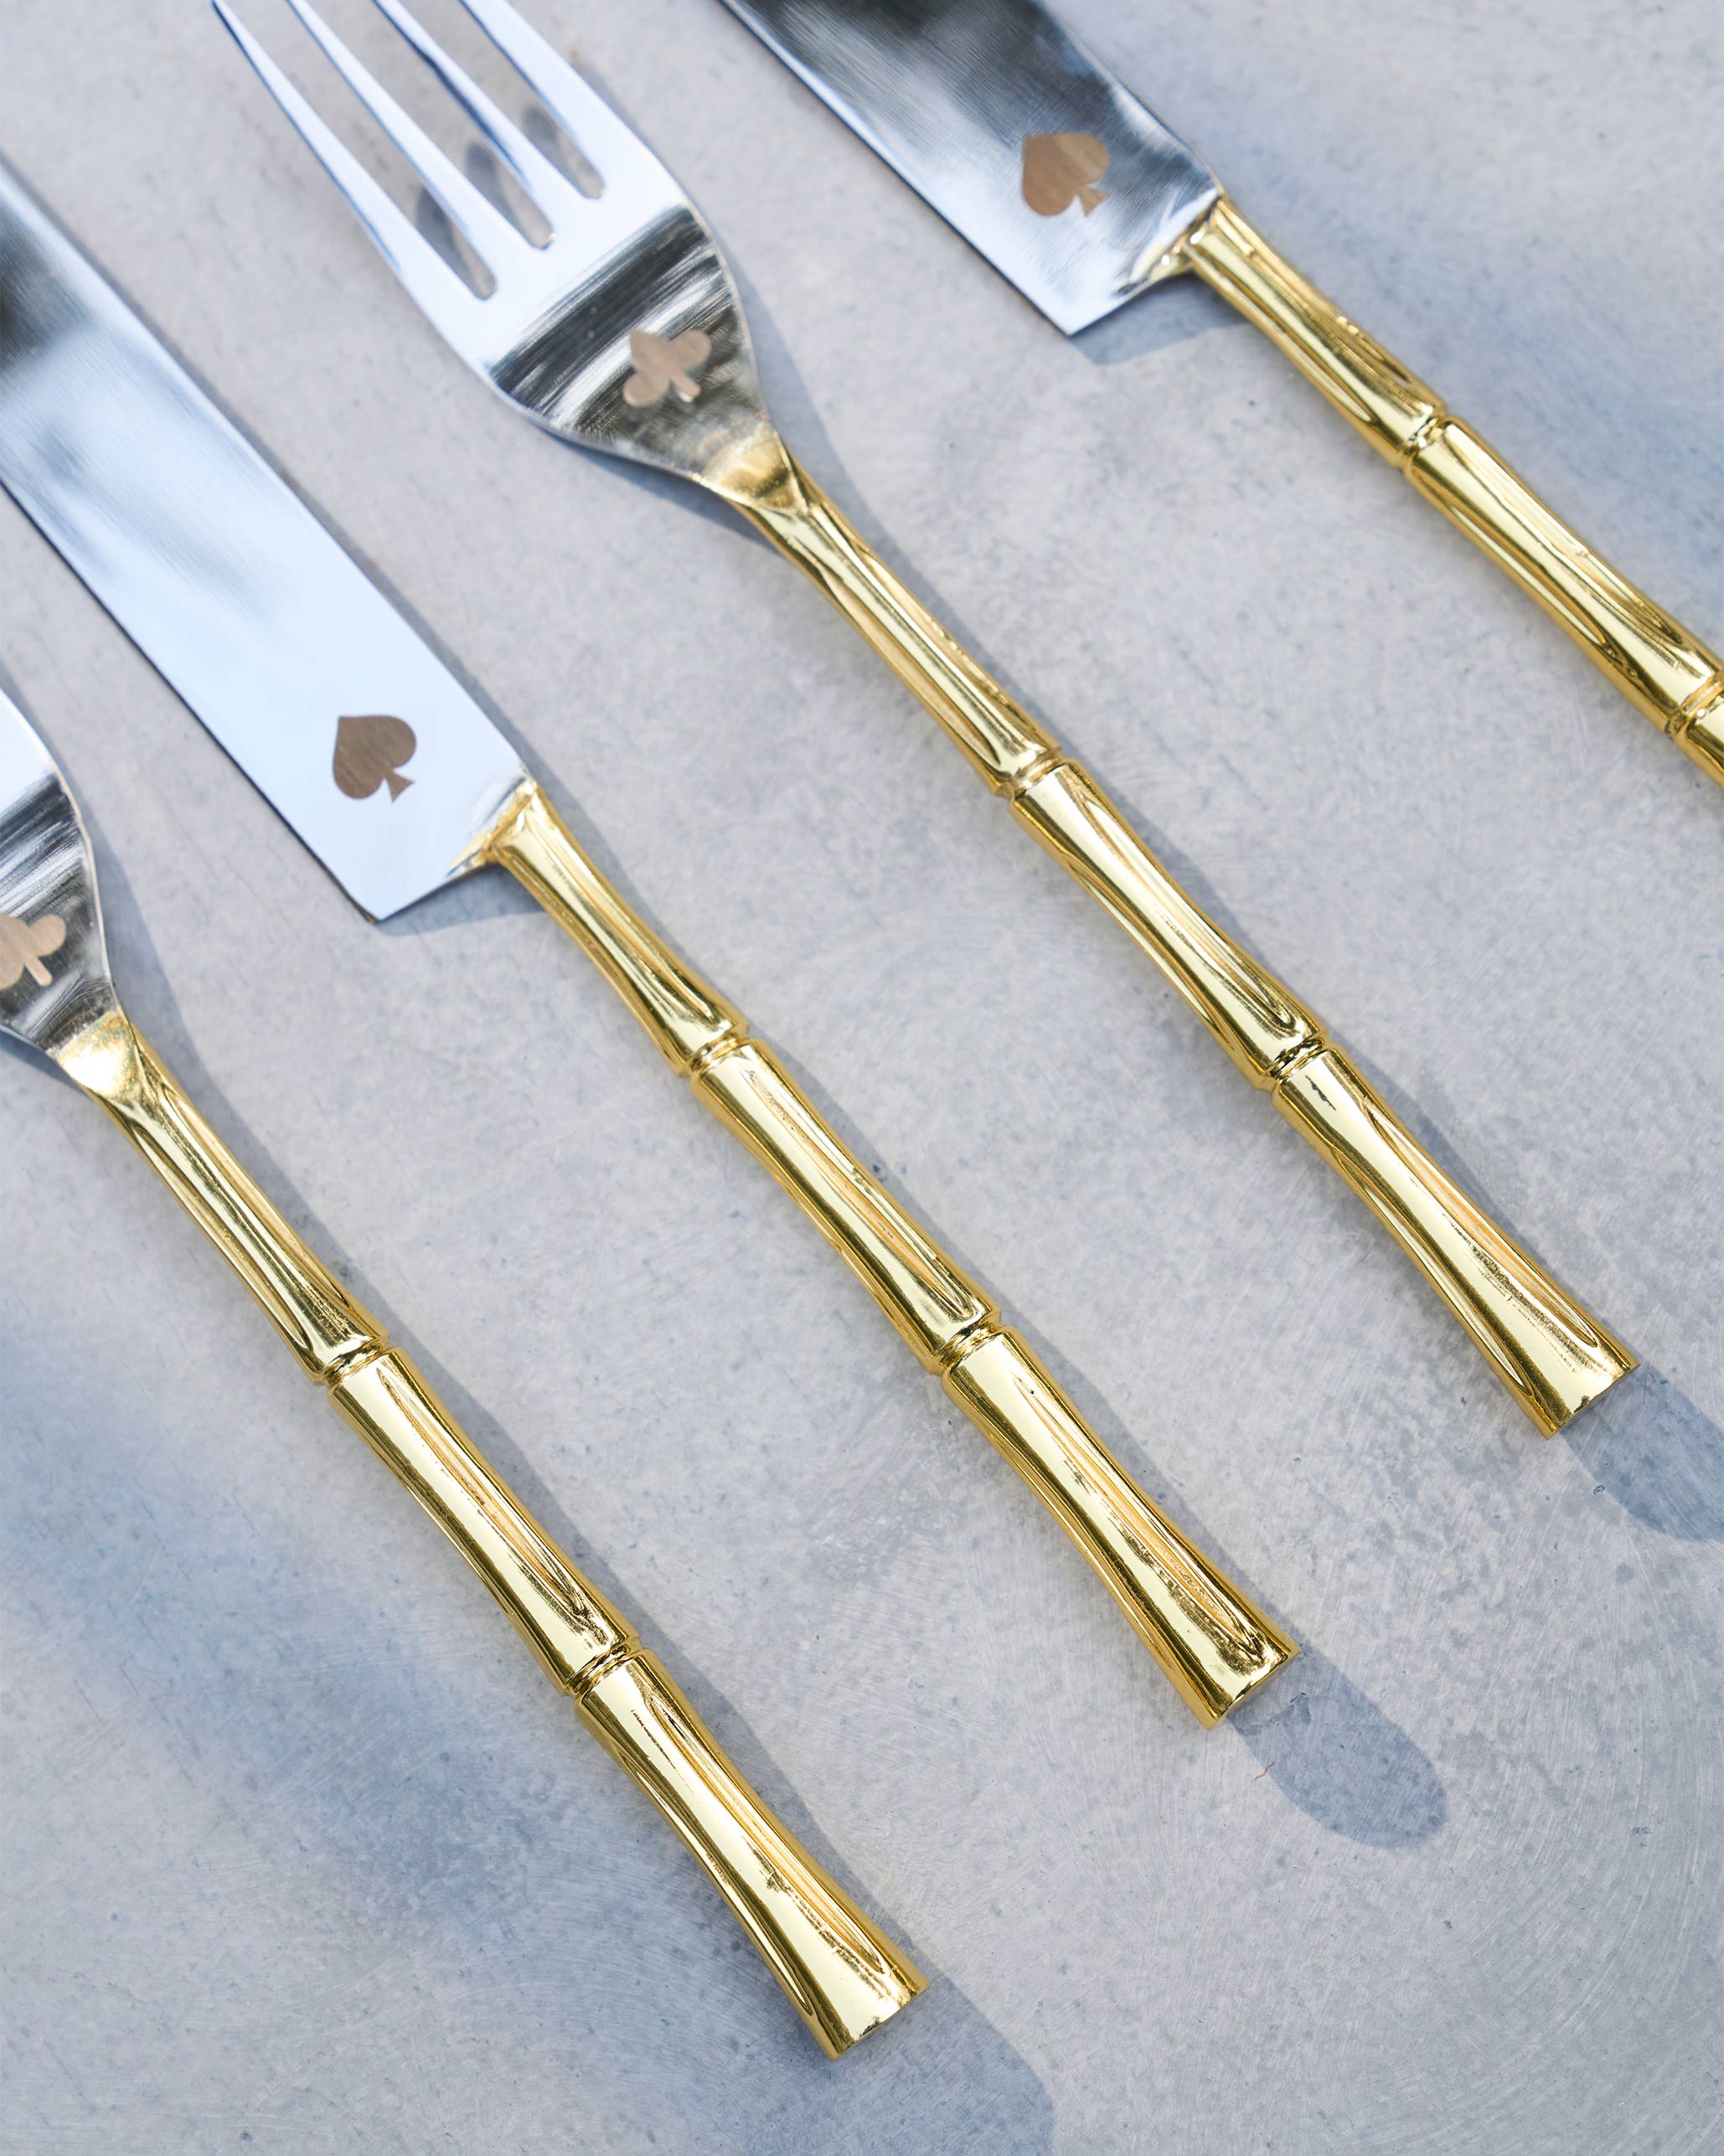 Spade & Club Cutlery (Set of 4)